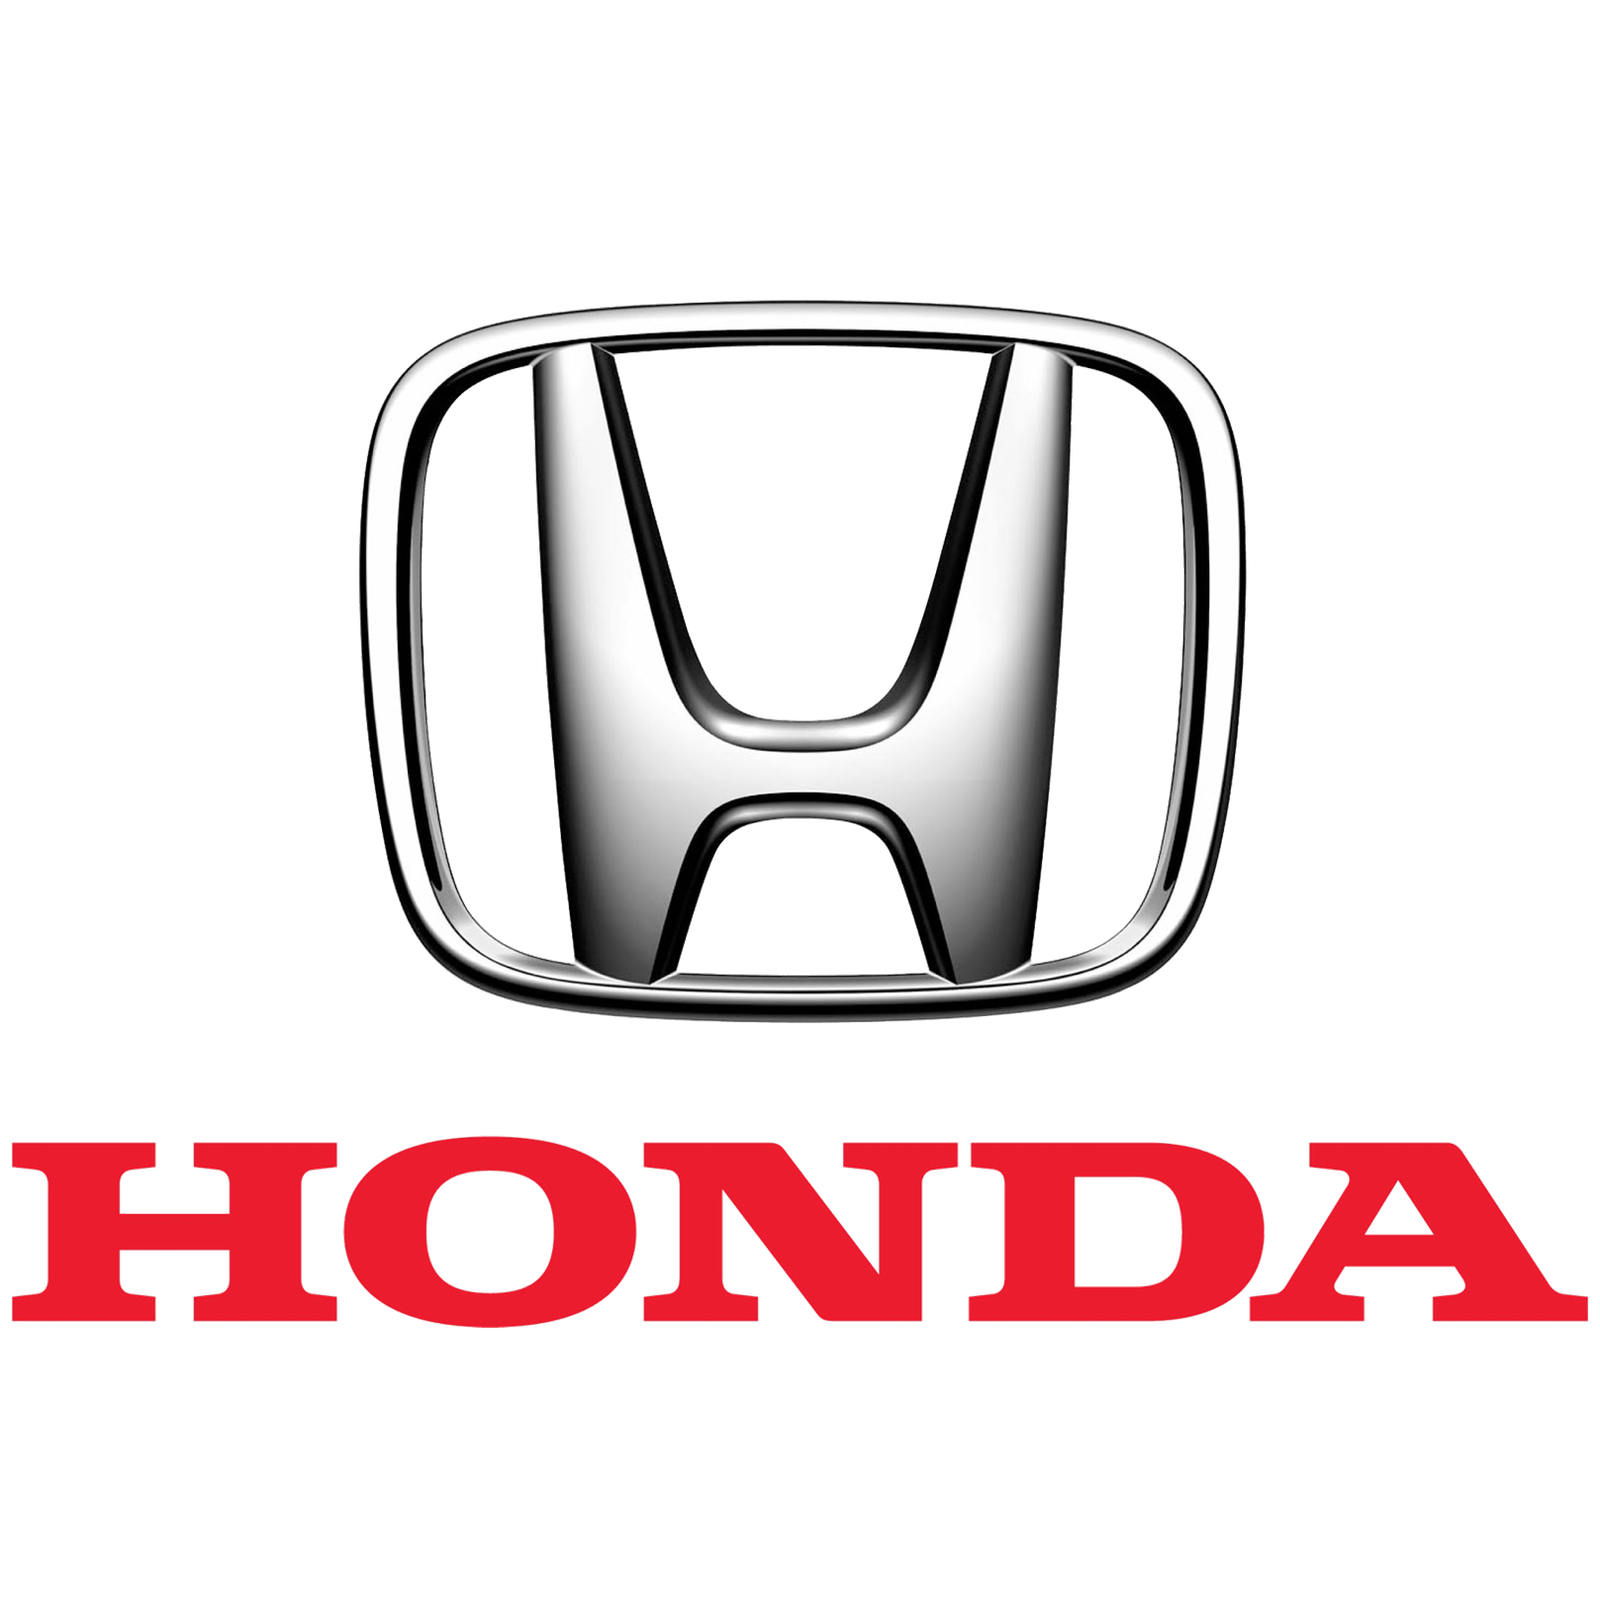 verkoop uw Honda snel en eenvoudig via Carswitch.be, de gespecialiseerde opkoper voor Honda in België.